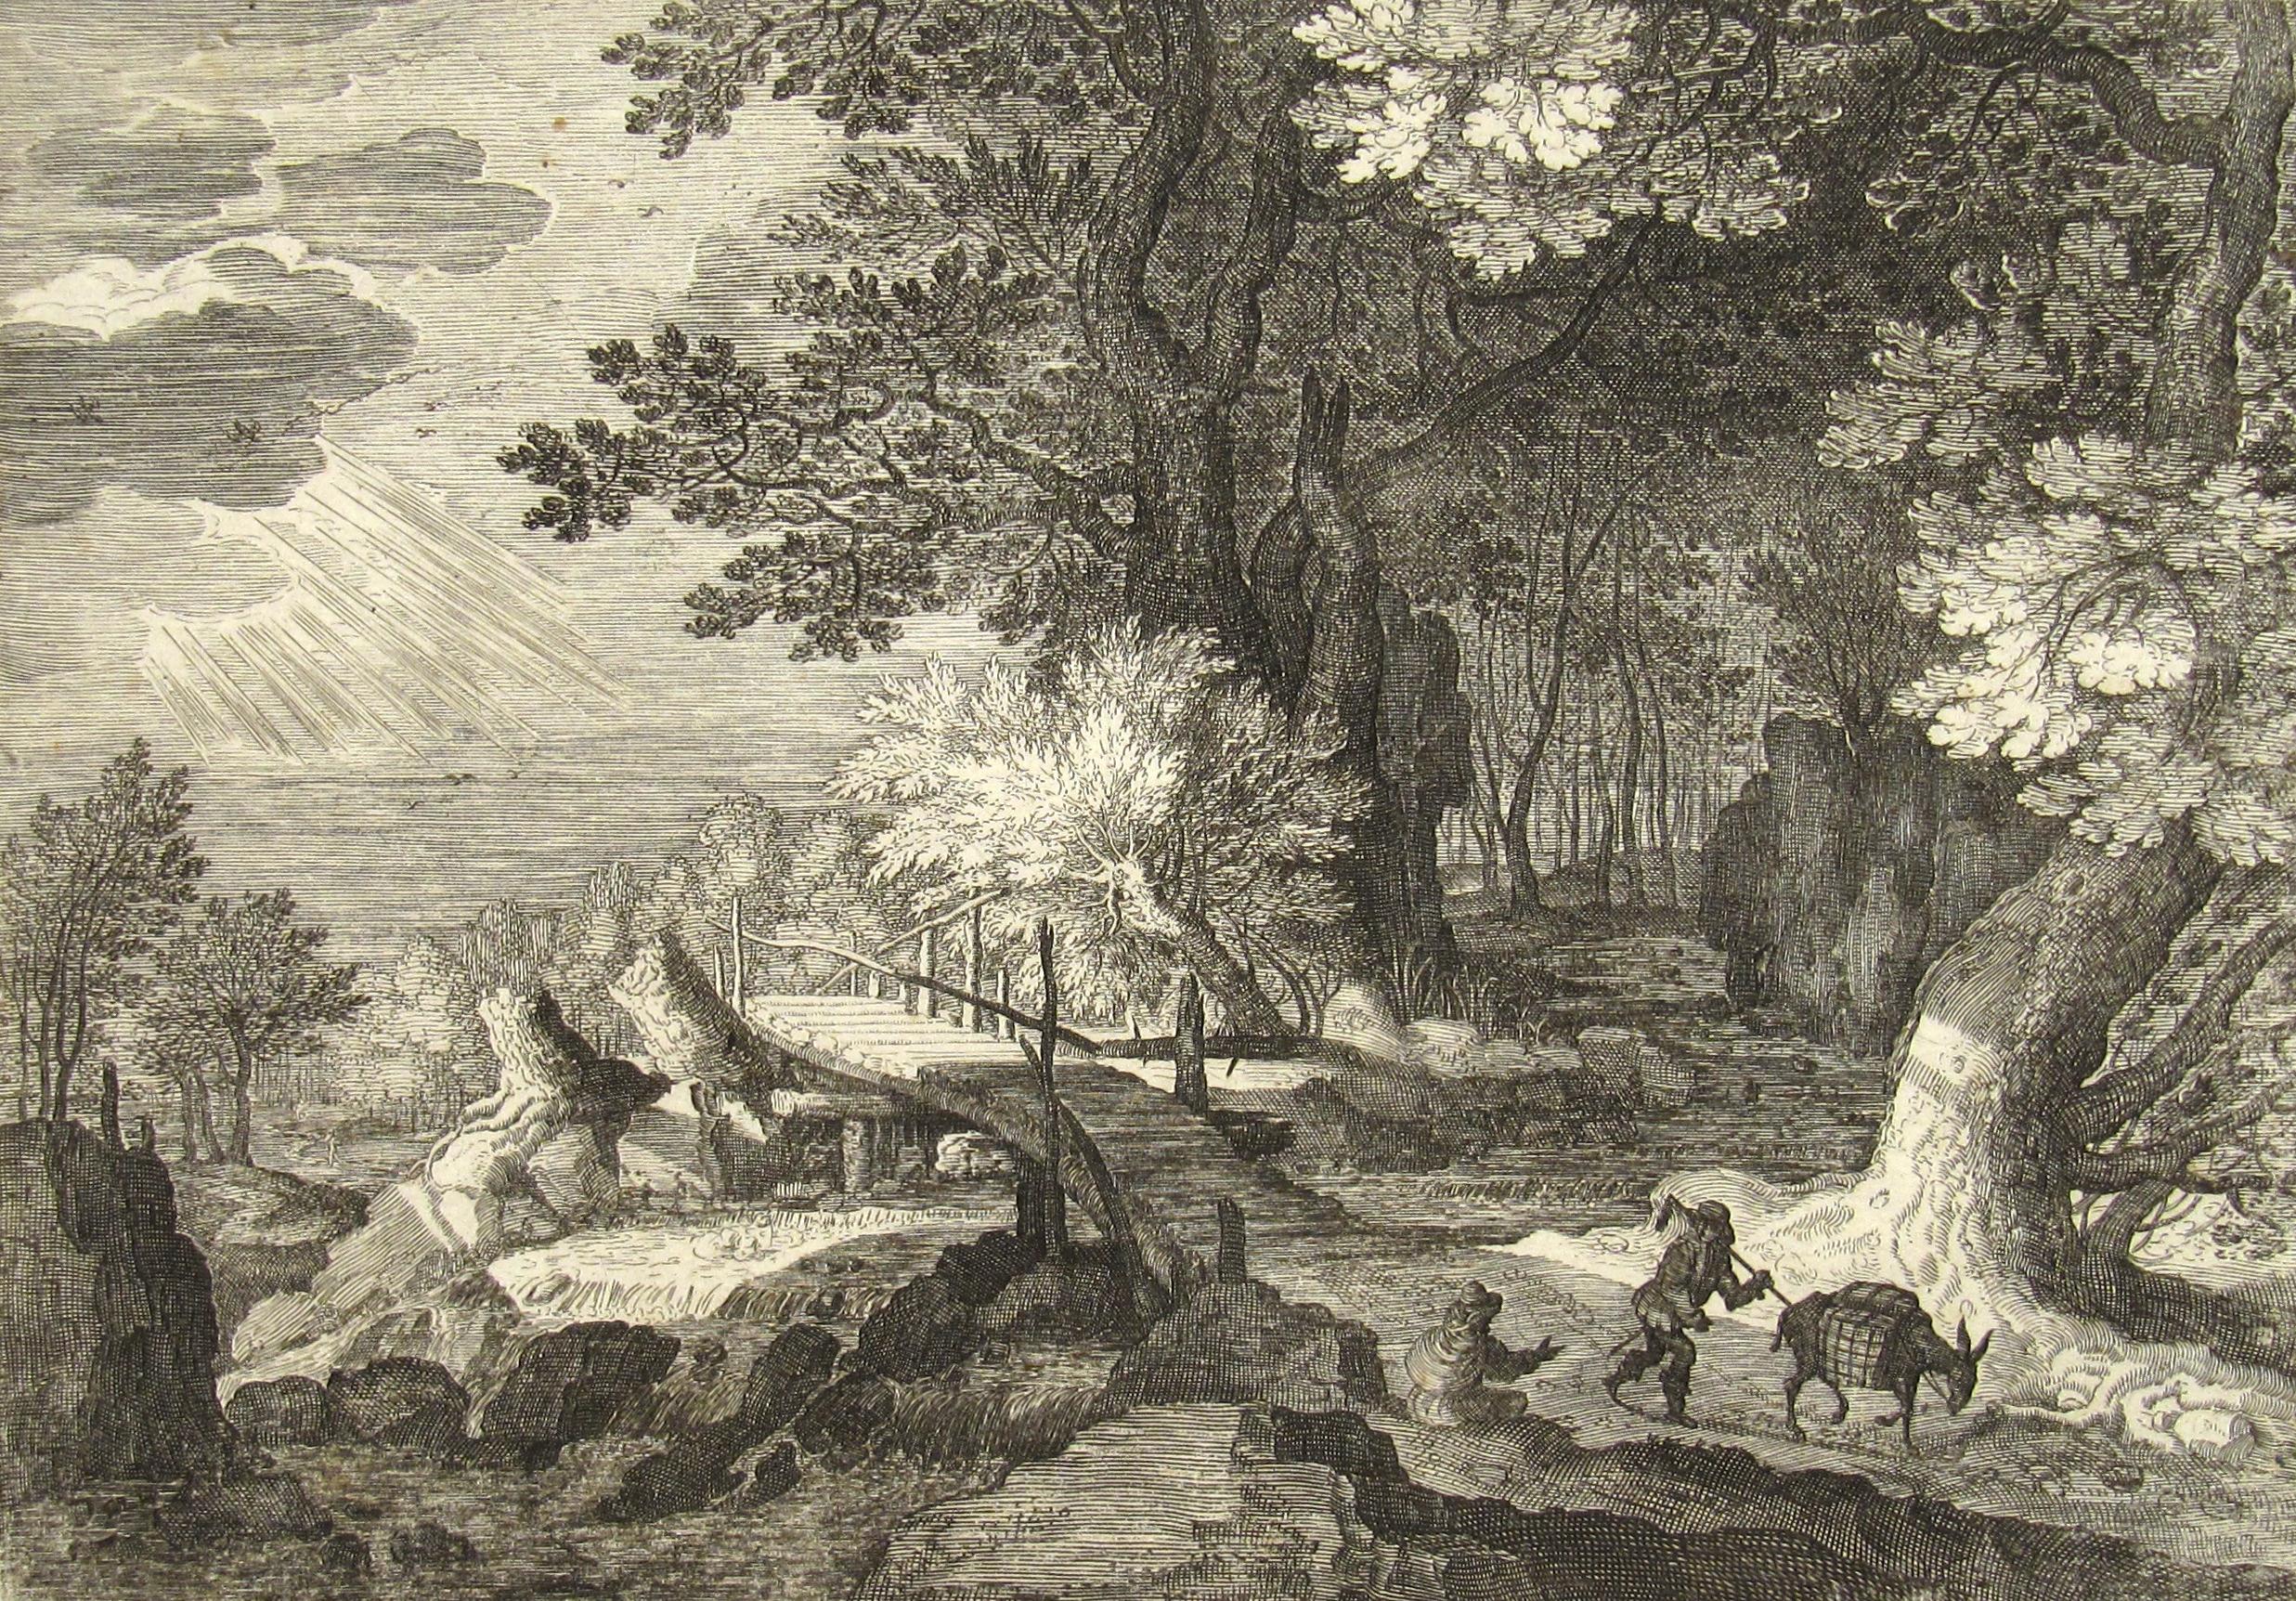 
Aegidius Sadeler
(Flämisch, 1570-1629)

Romantische Waldszene mit einem Reisenden und seinem beladenen Maultier, das an einer sitzenden, am Straßenrand ruhenden Figur vorbeizieht

- •	16., möglicherweise frühes 17. Jahrhundert
- •	Kupferstich auf